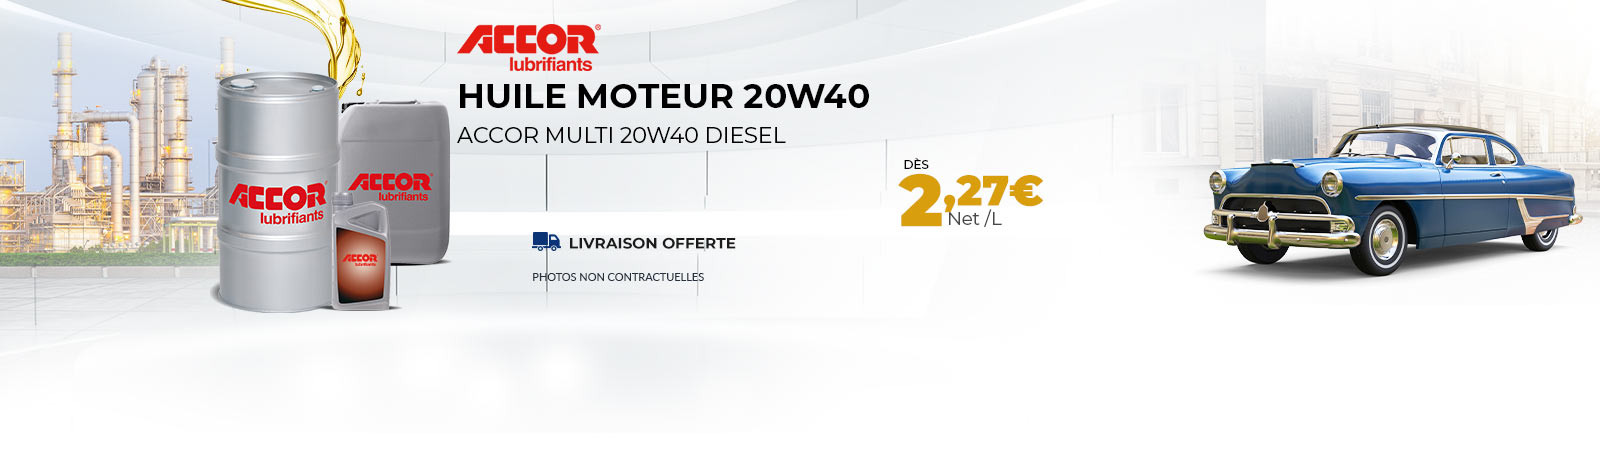 Huile 20w40 pour moteur ancien dès 2.27 €/l